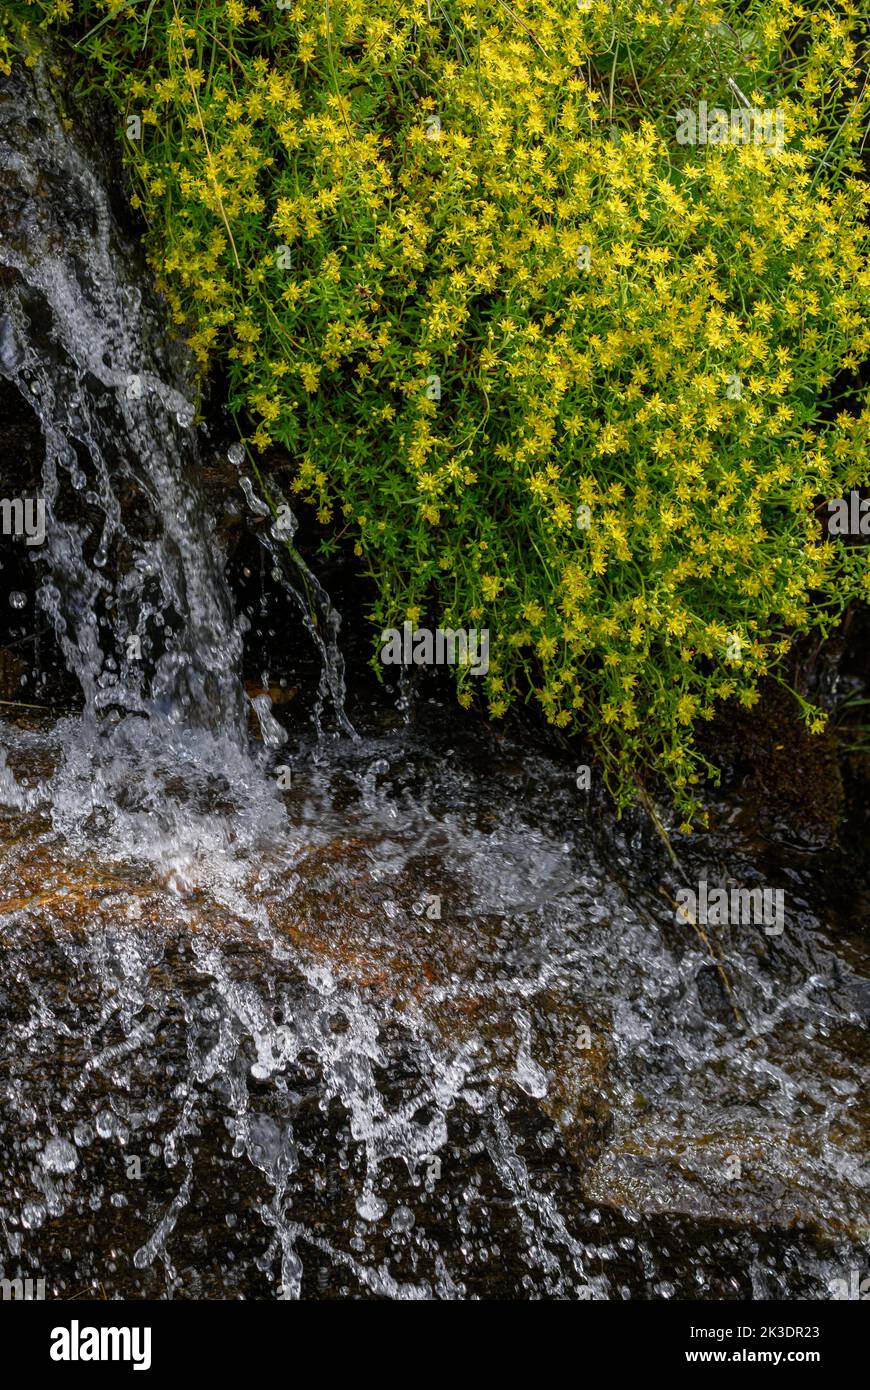 Saxifrage de montagne jaune, Saxifraga aizoides, en fleur dans le ruisseau de montagne. Alpes italiennes. Banque D'Images